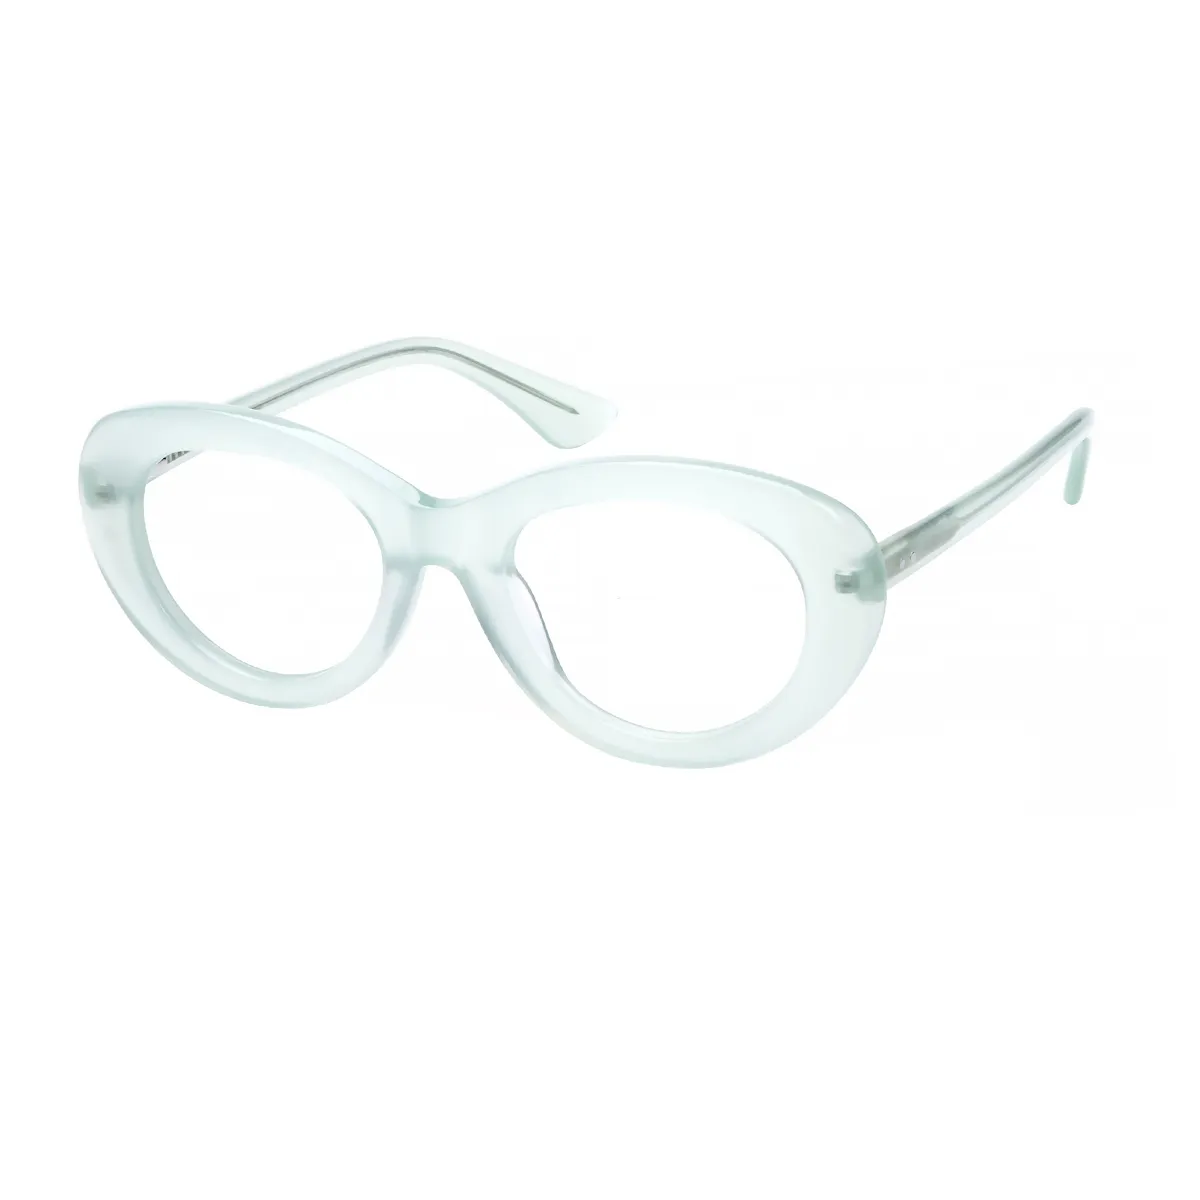 Jossi - Cat-eye Light Green Glasses for Women - EFE